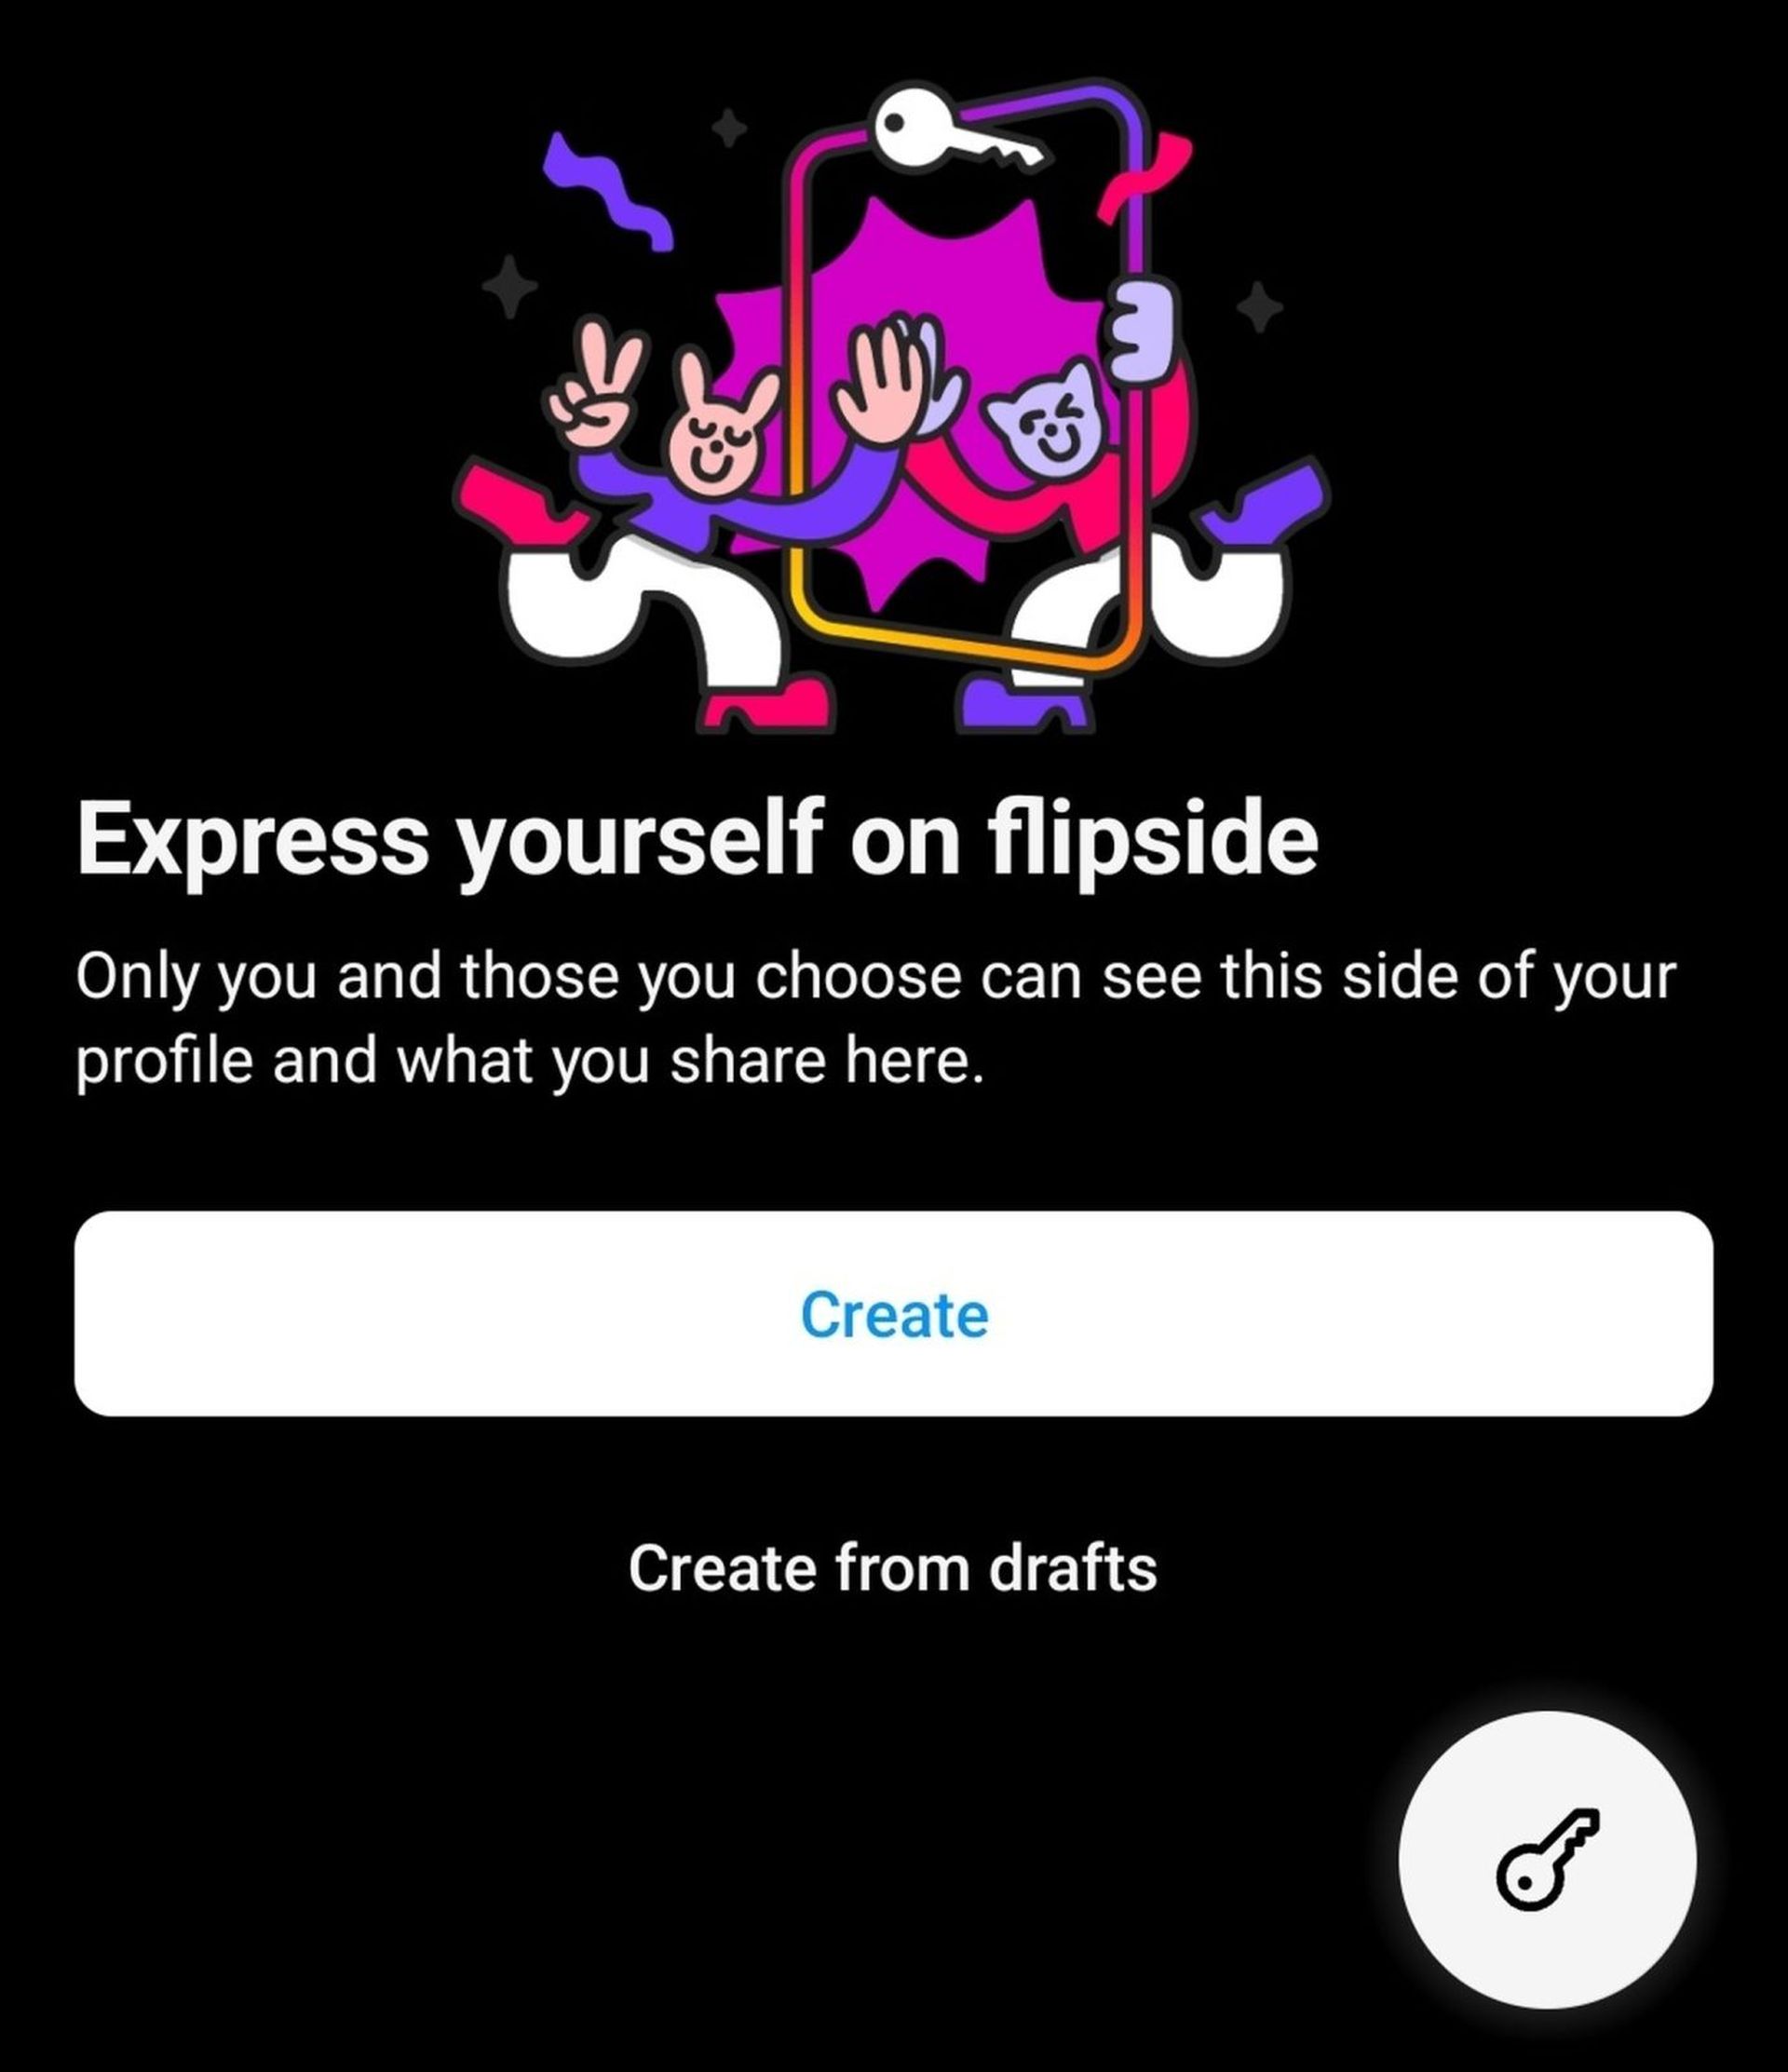 Co to jest Flipside na Instagramie?